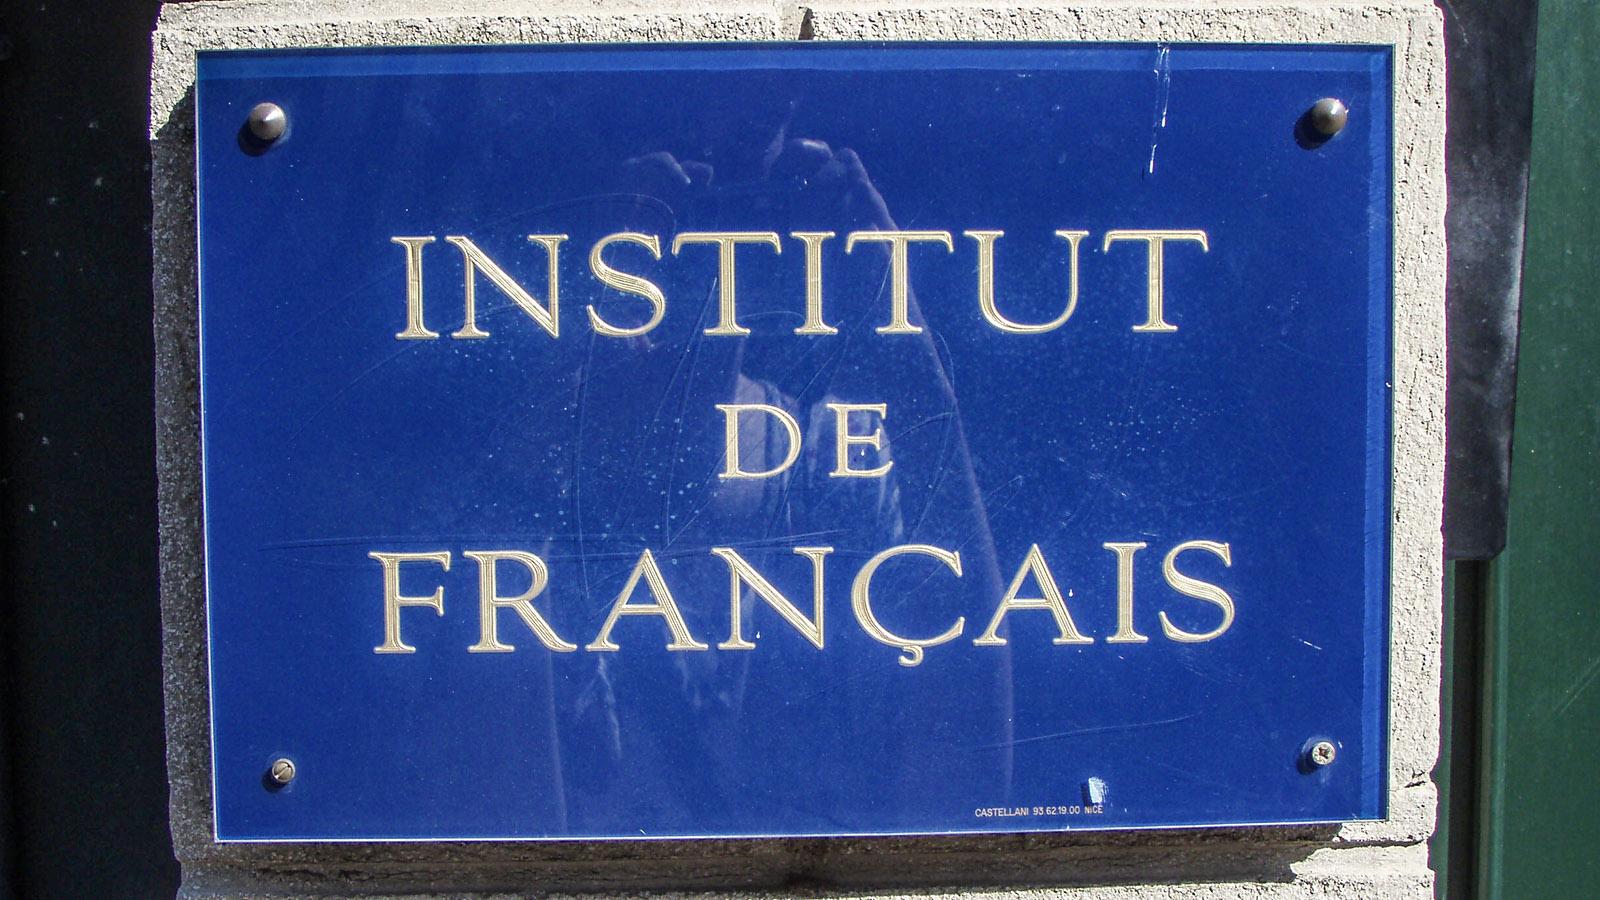 Französisch lernen durch aktives Sprechen ist Programm bei dieser Sprachschule. Foto: Kerstin Gorges